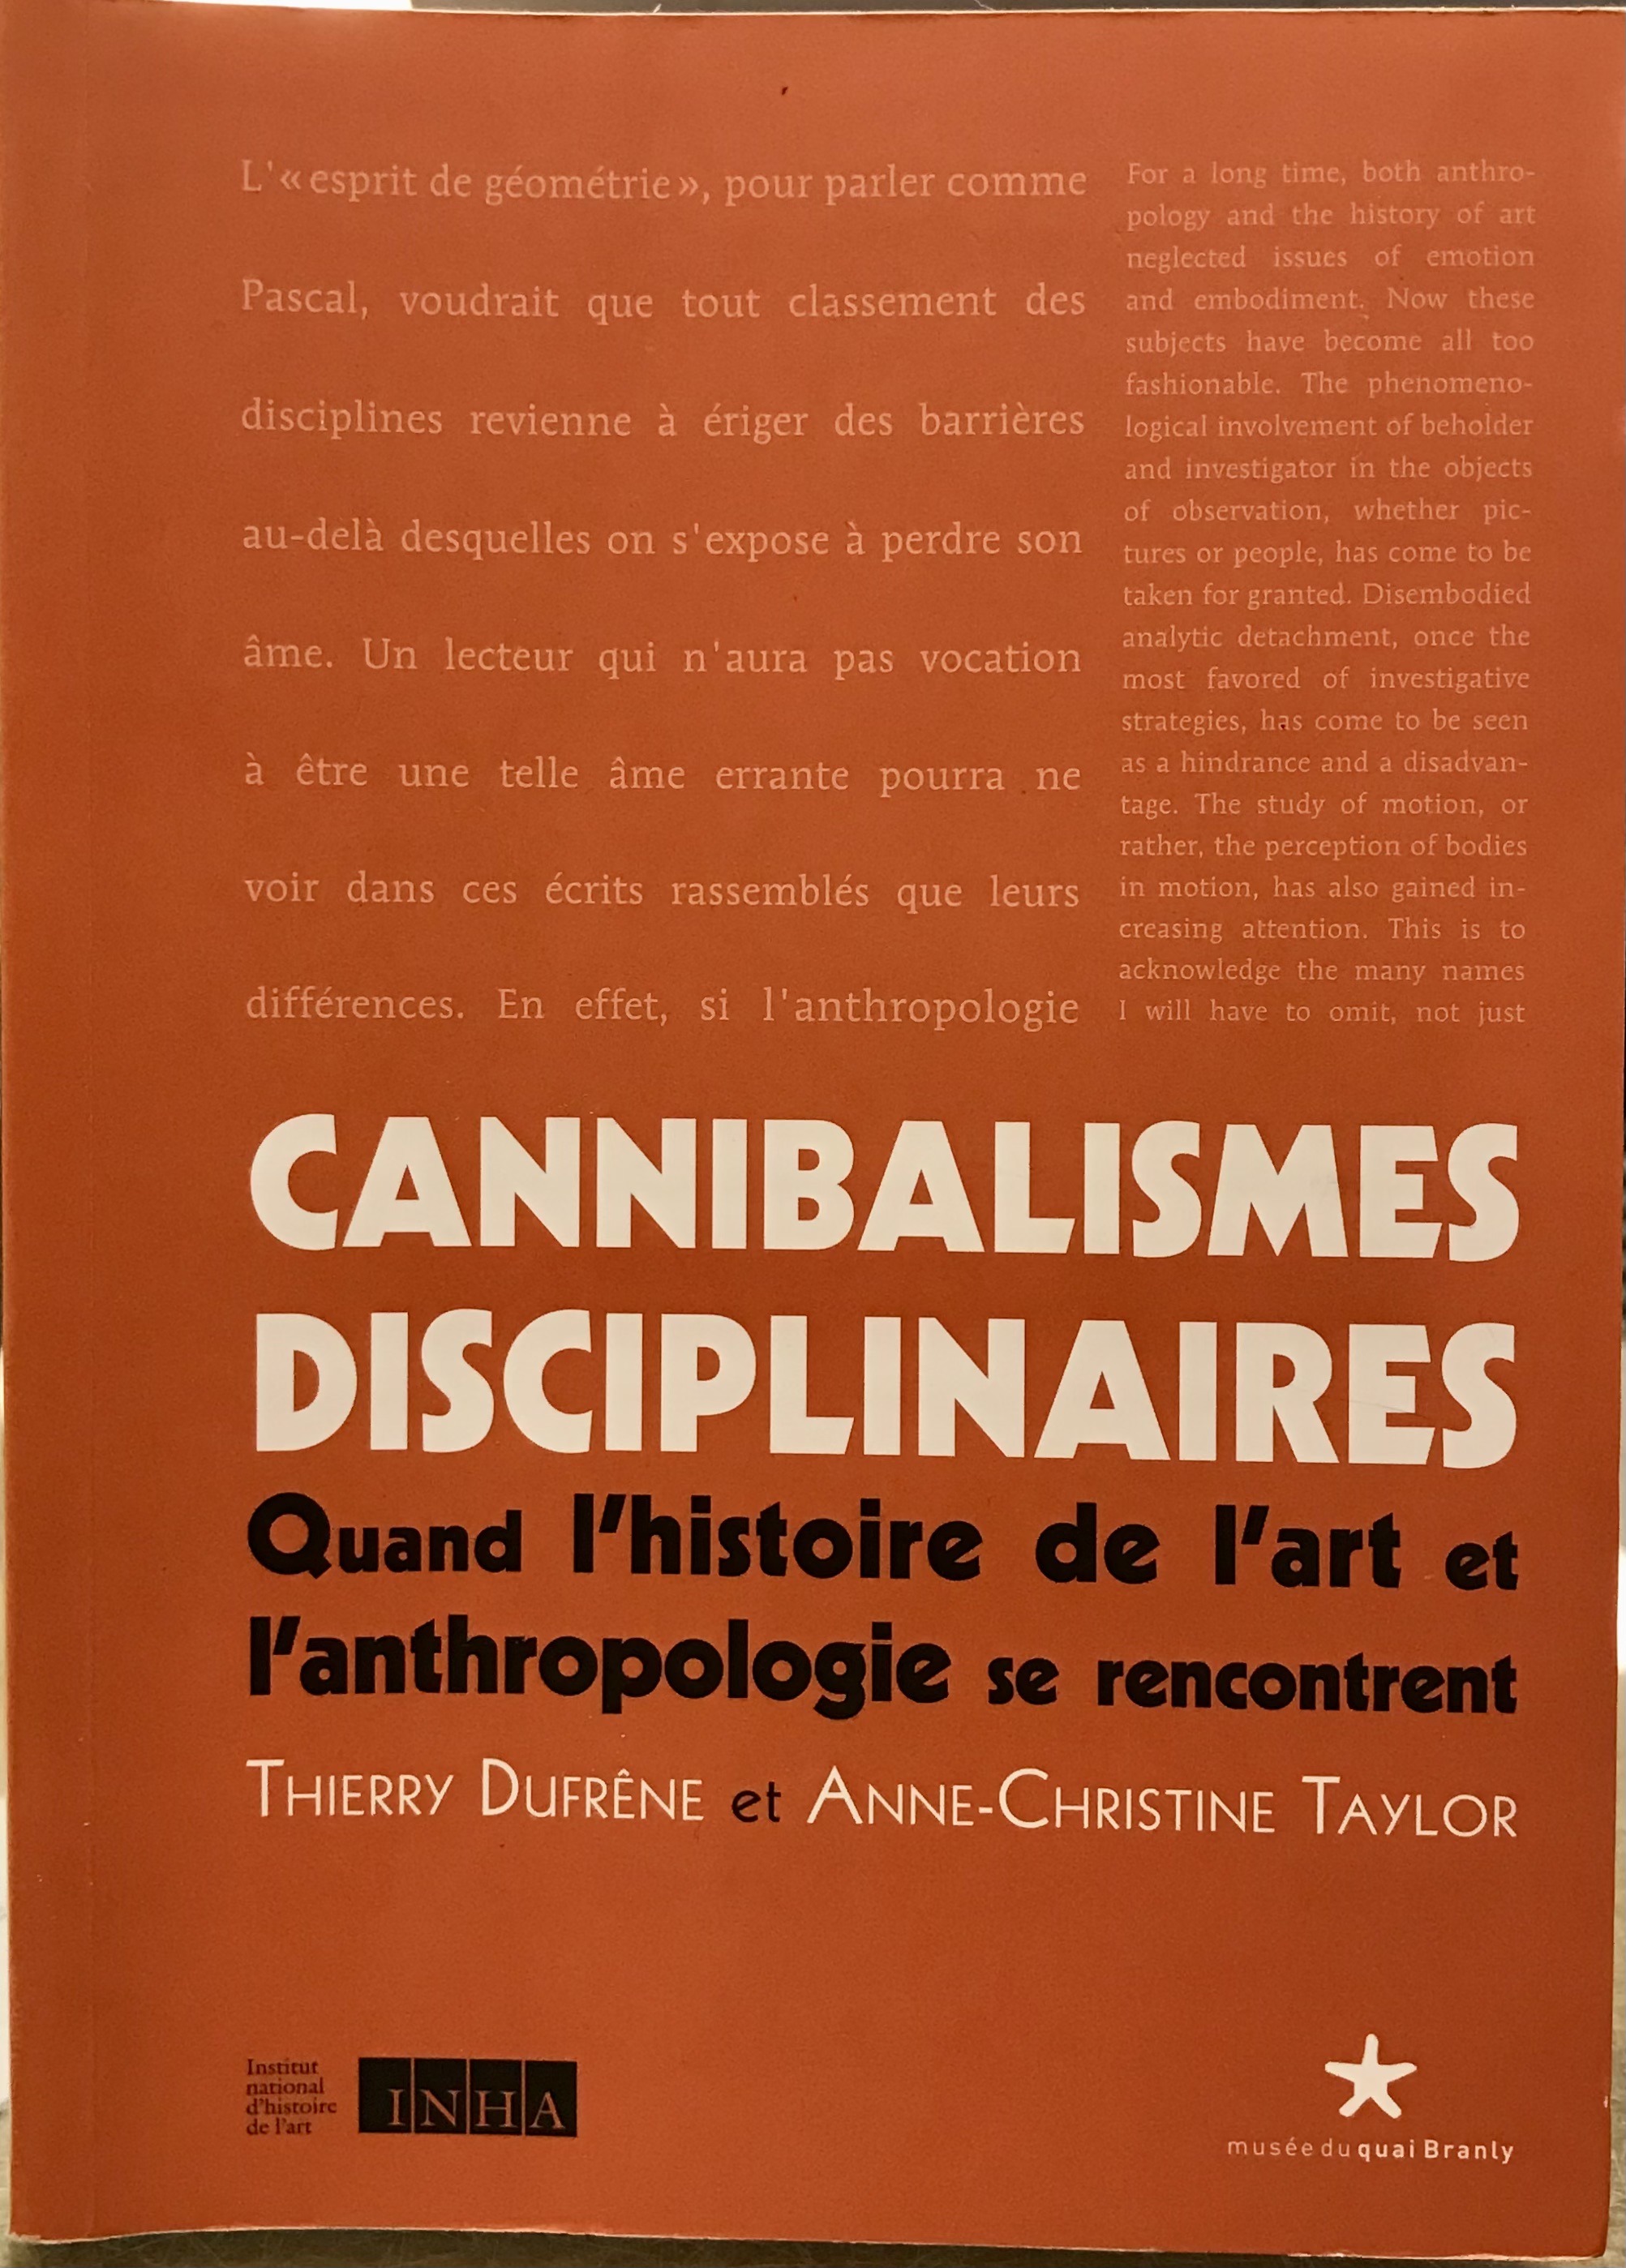 Cannibalismes Disciplinaires: Quand l'histoire de l'art et l'anthropologie se rencontrent - Dufrêne, Thierry & Taylor, Anne- Christine